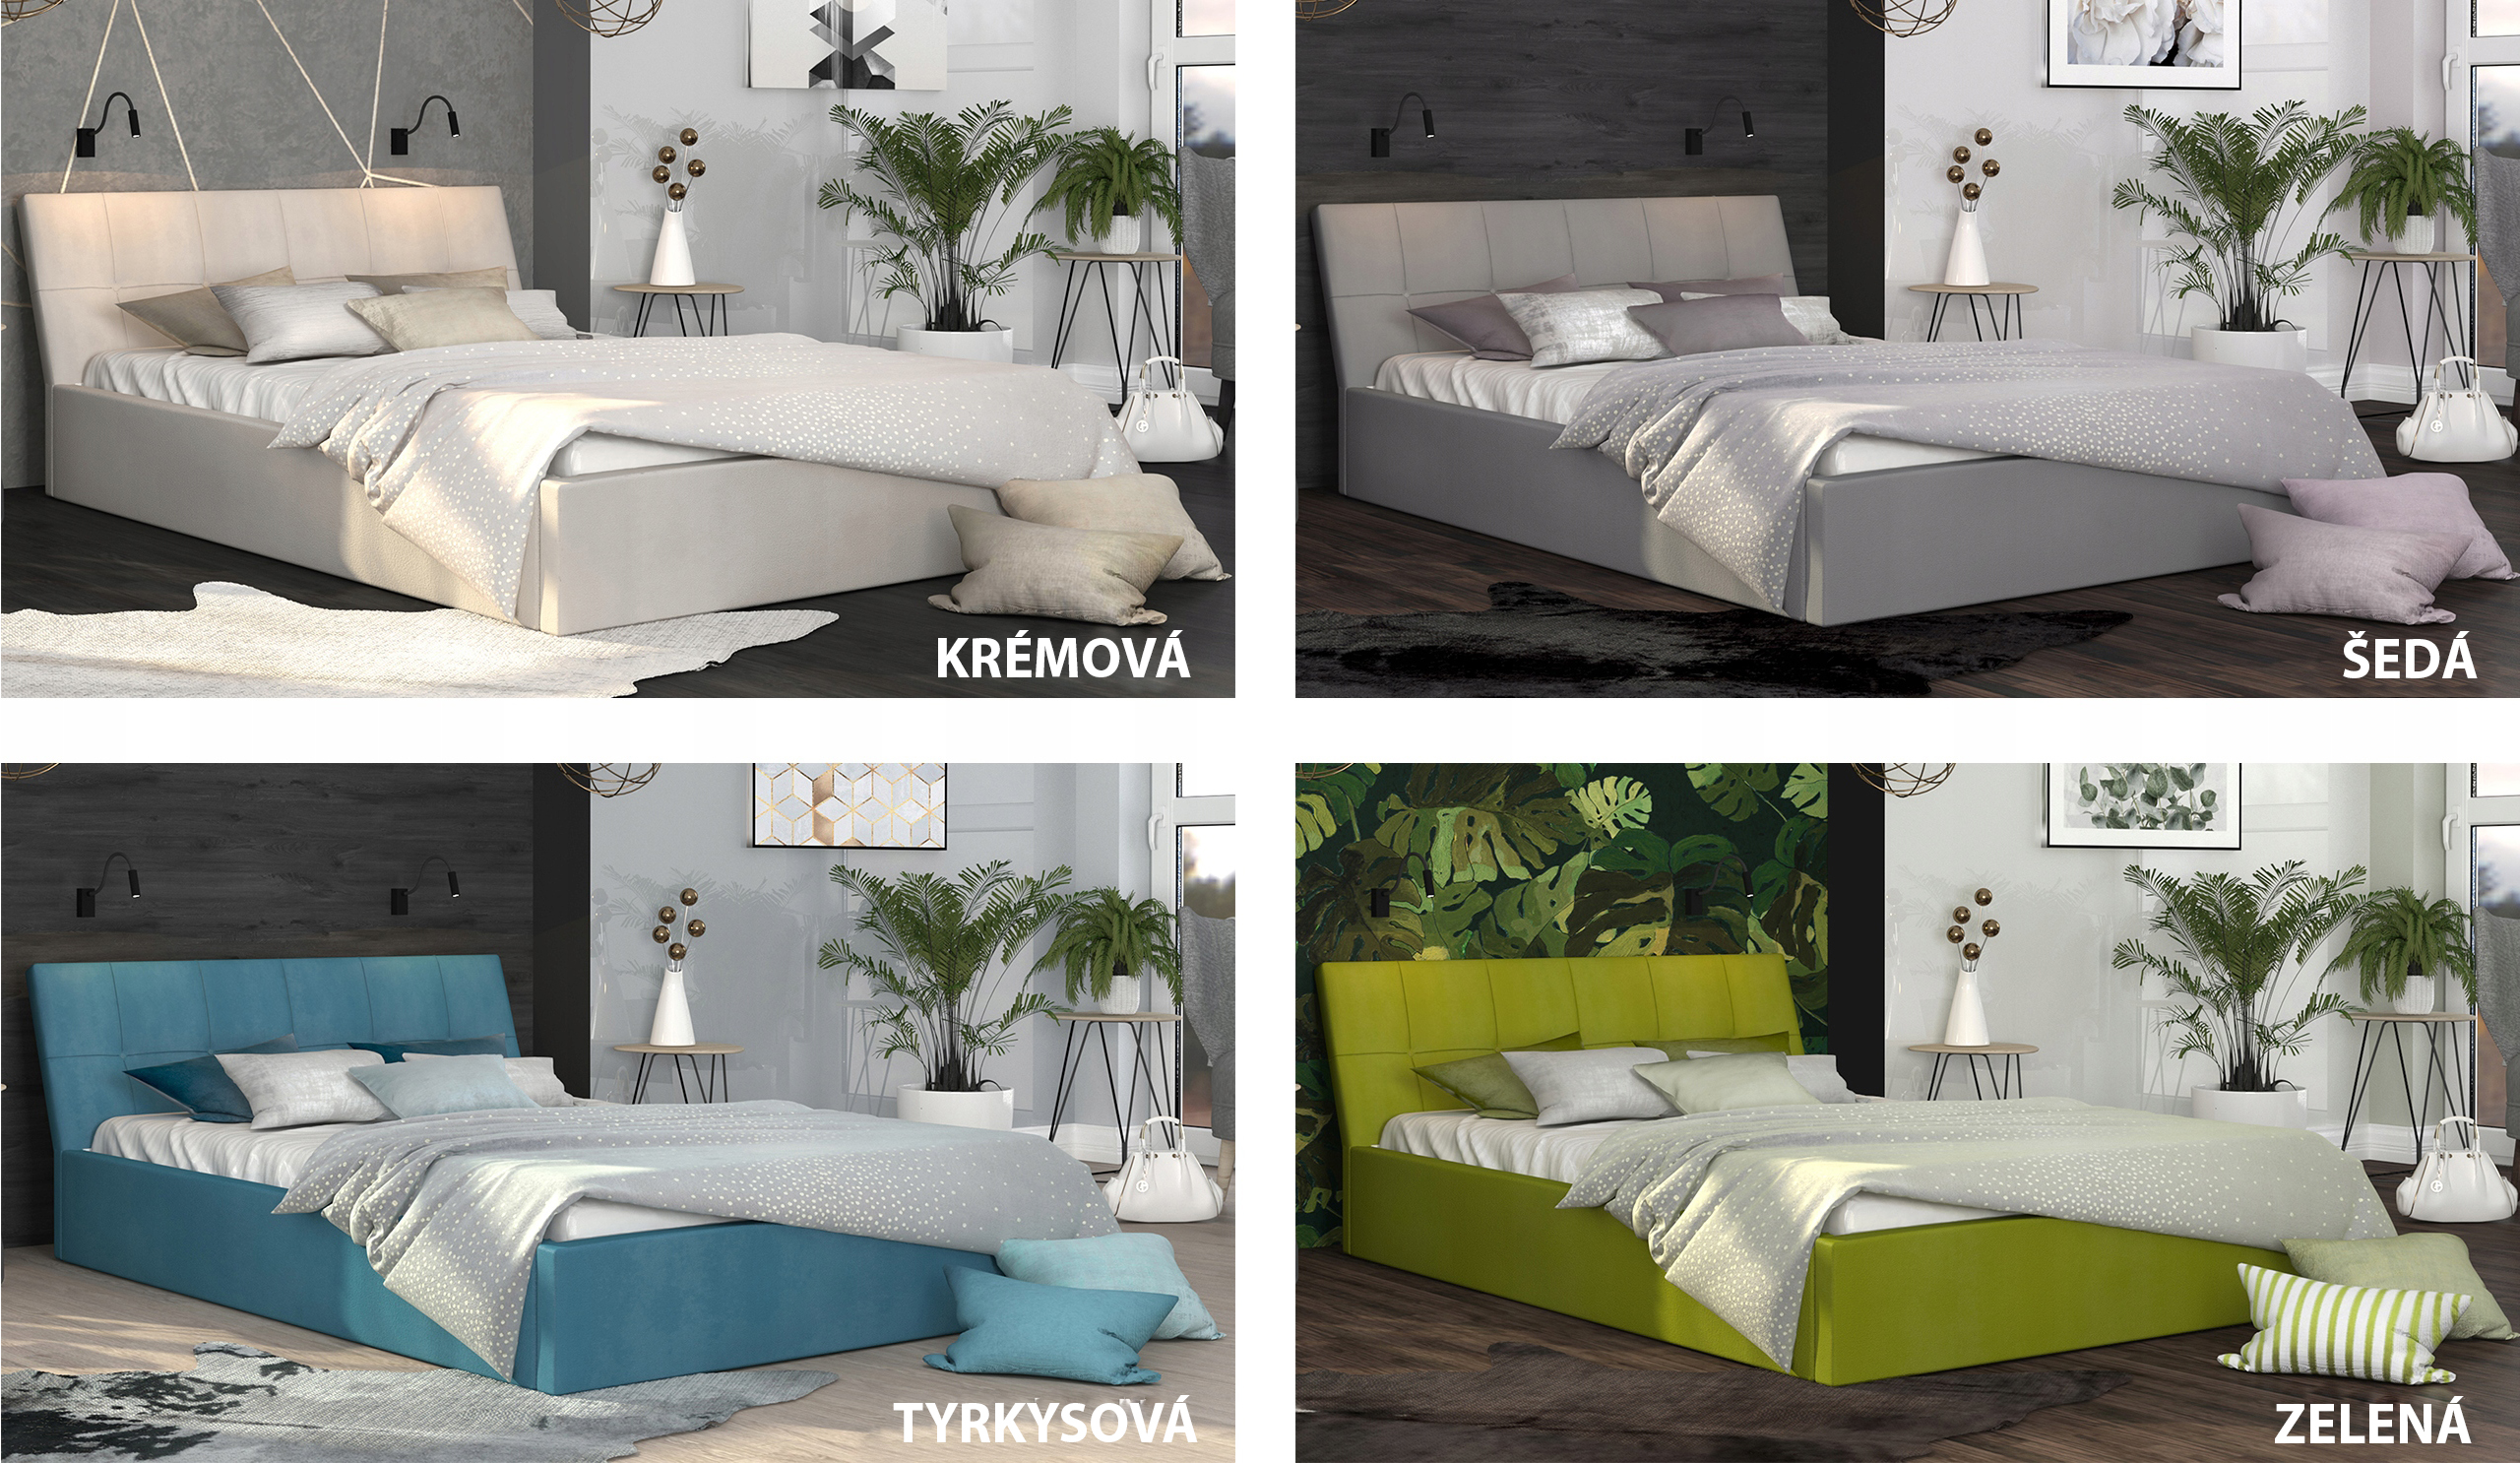 Luxusní manželská postel VEGAS zelená 140x200 semiš s kovovým roštem